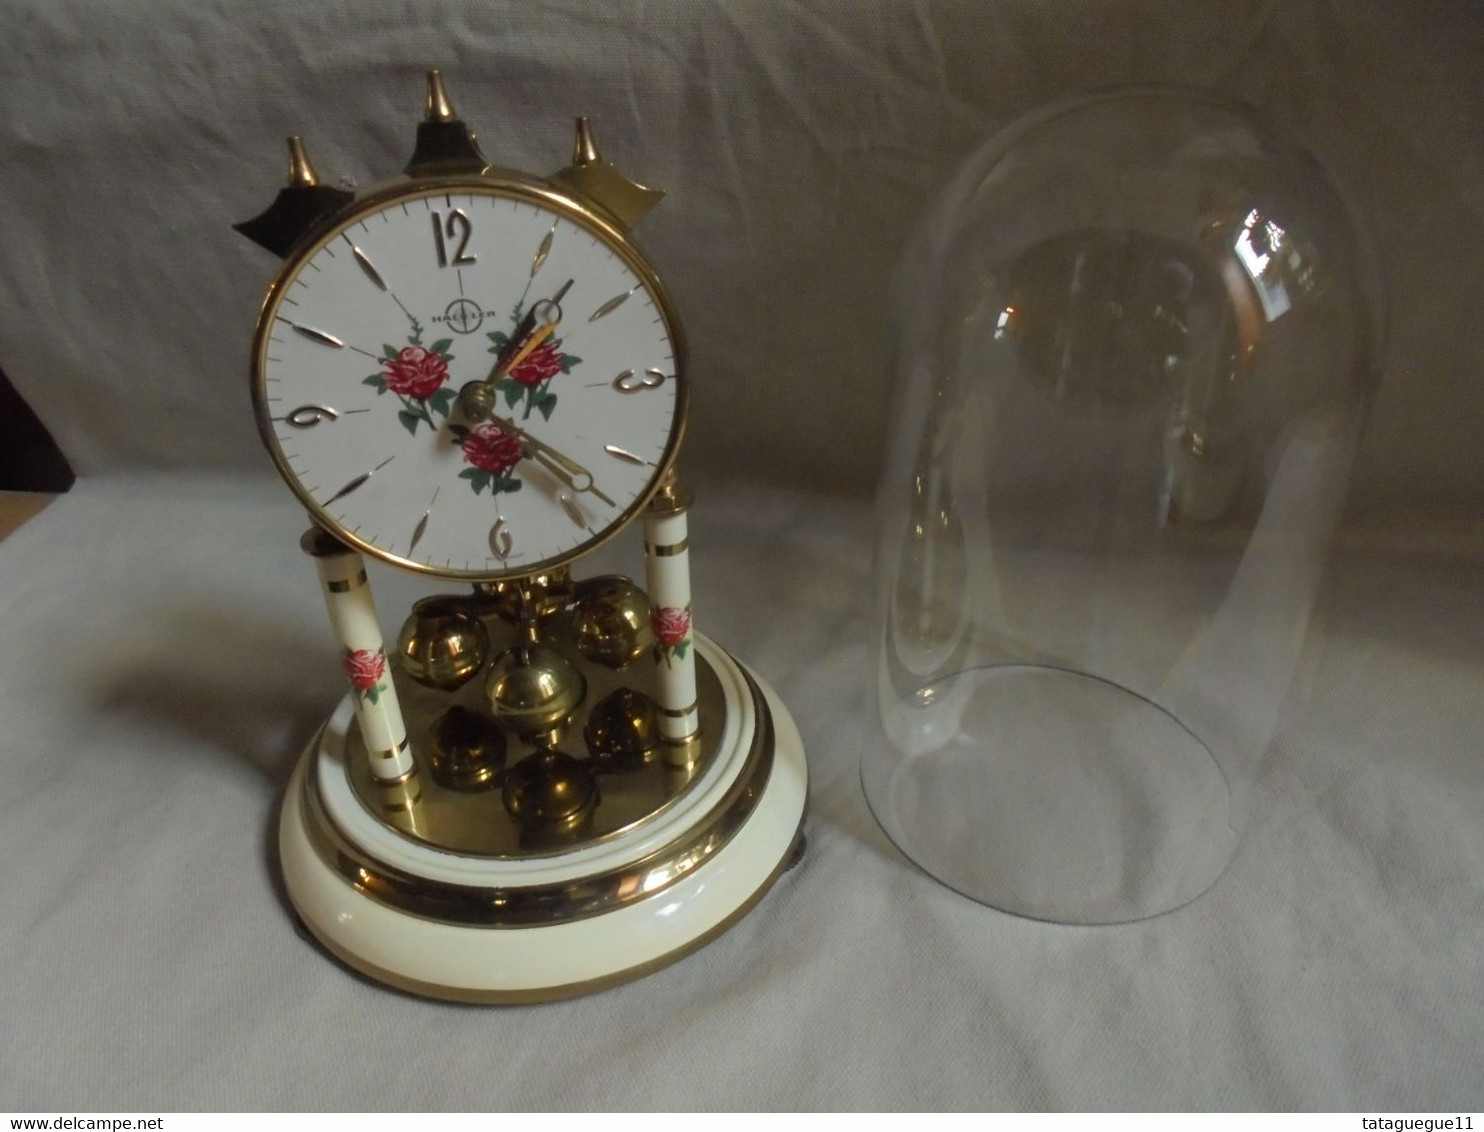 Ancien - Pendule Horloge à Poser Haller Germany Décor Petites Roses (A Réparer) - Horloges